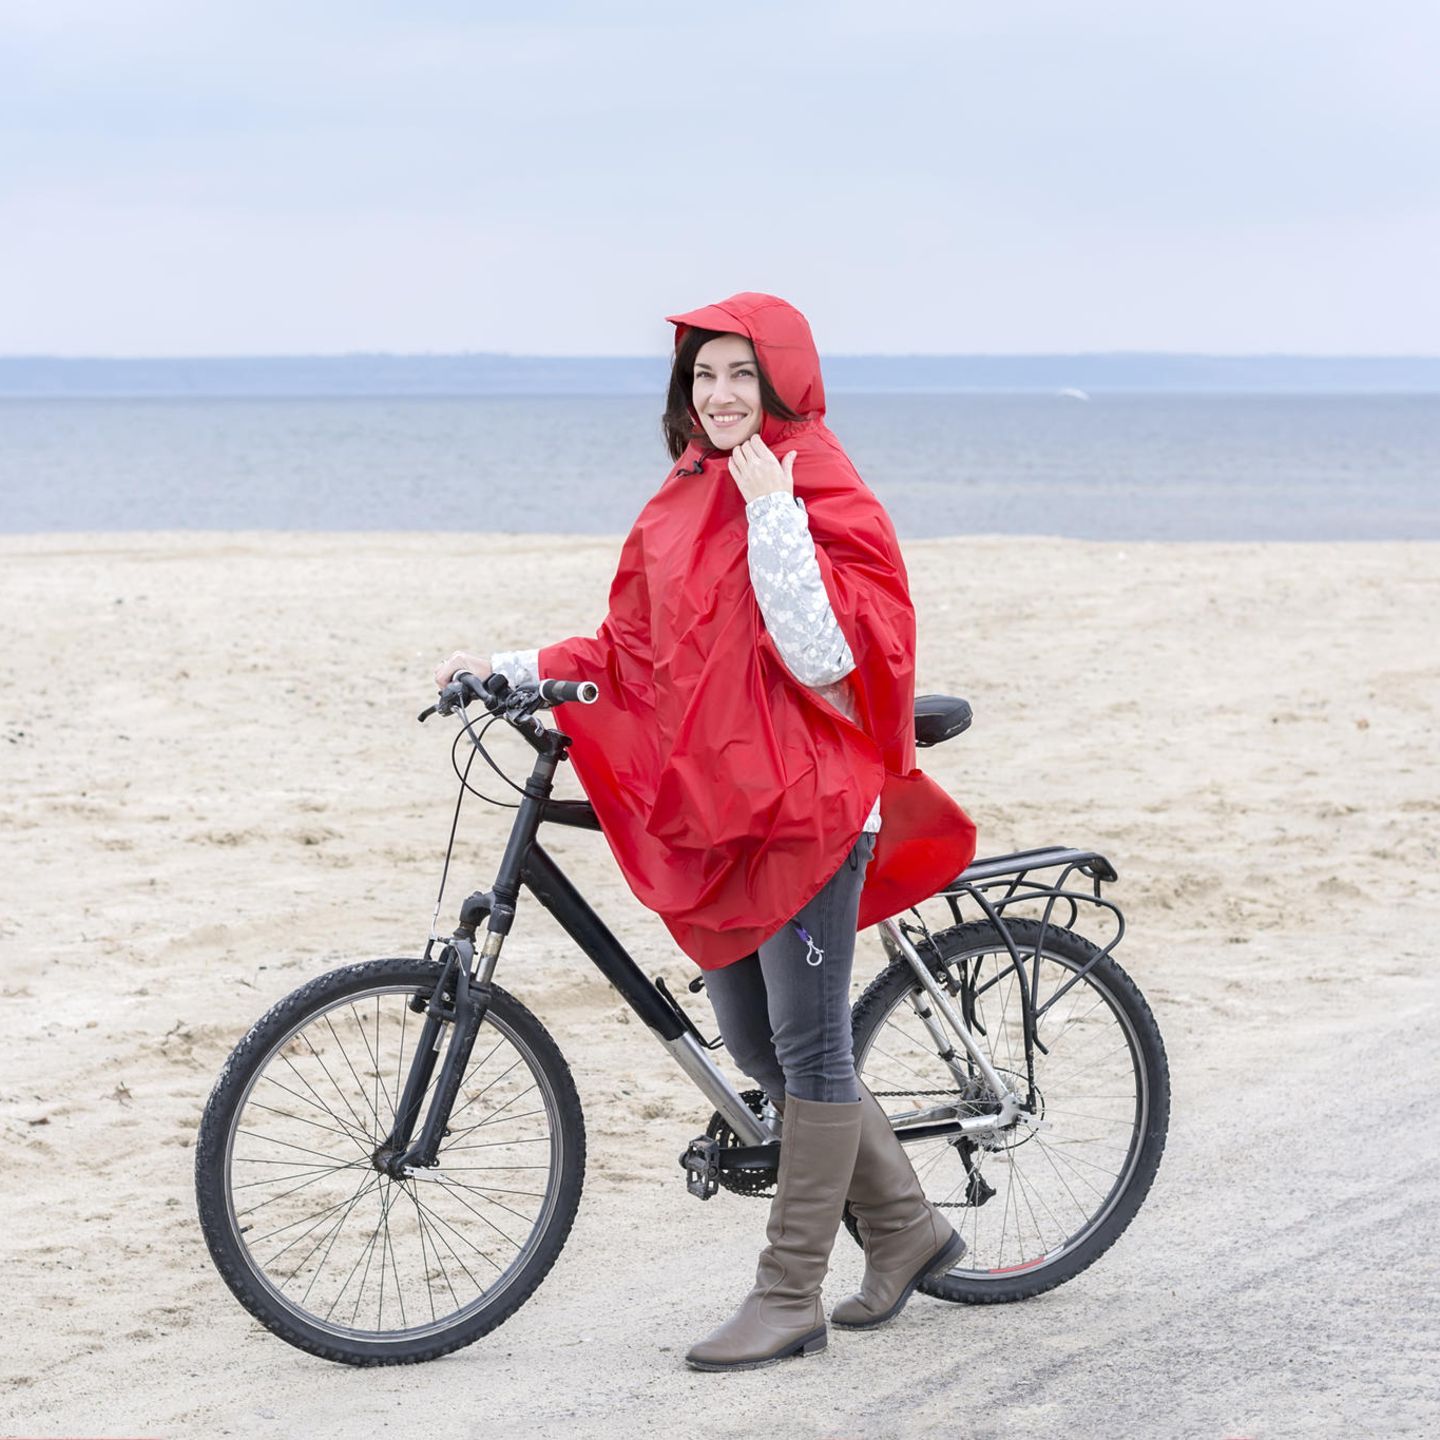 Regenponcho fürs Fahrrad: Diese 6 Modelle halten dich sicher trocken